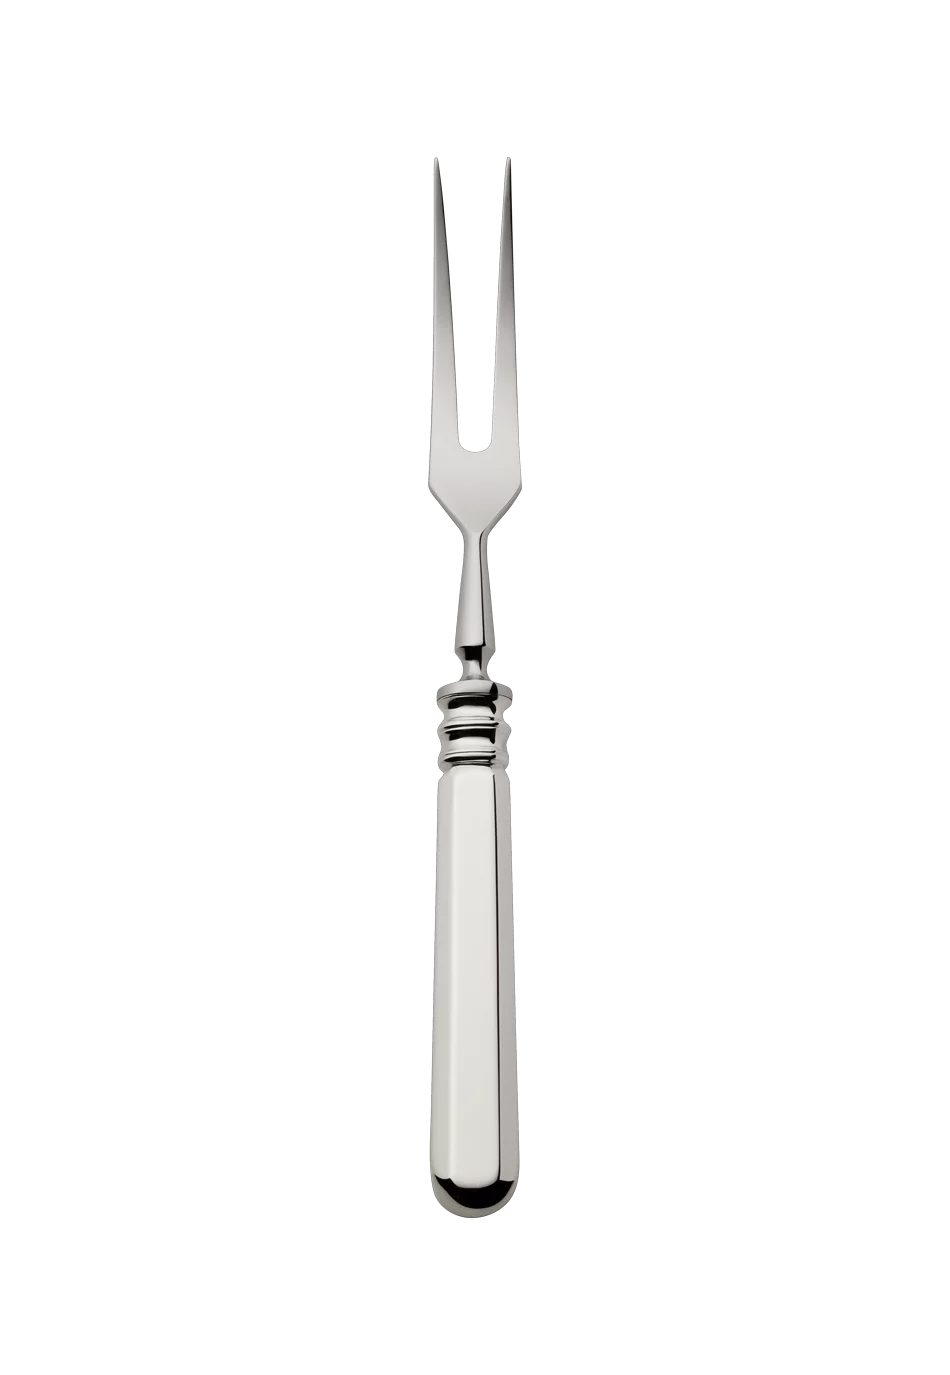 Alt-Spaten Carving Fork (925 Sterling Silver)